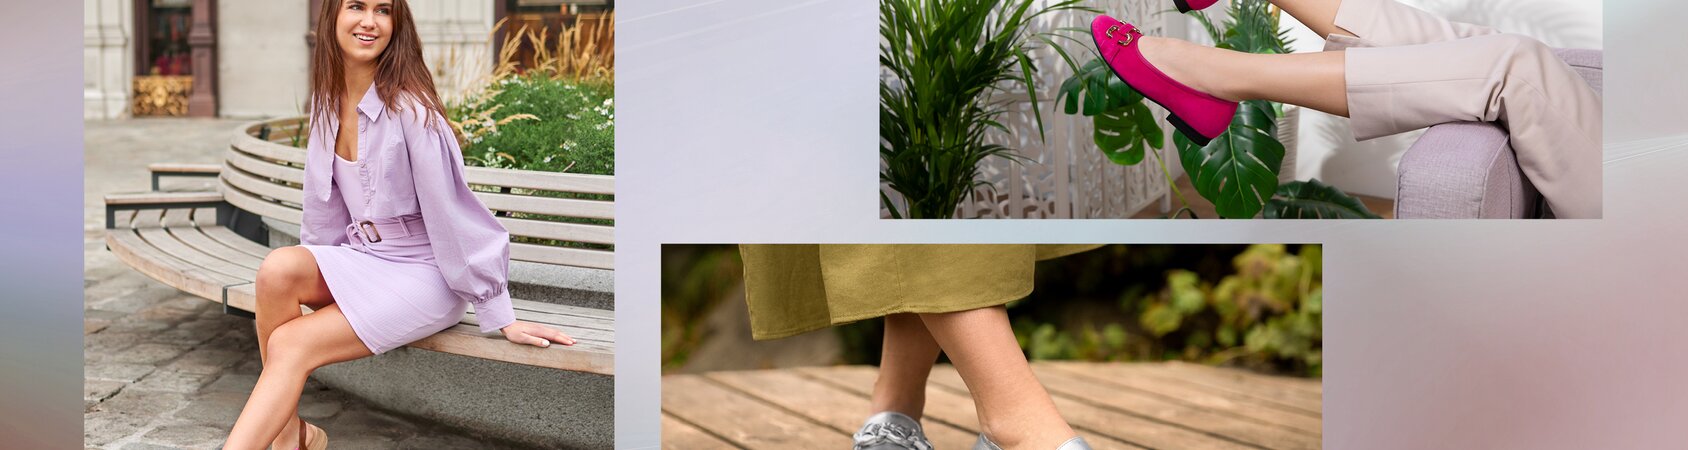 Gabor Magazin | Trends & Styling | Schuhfarben und Pantone-Farben richtig kombinieren | © Gabor Shoes AG, Deutschland